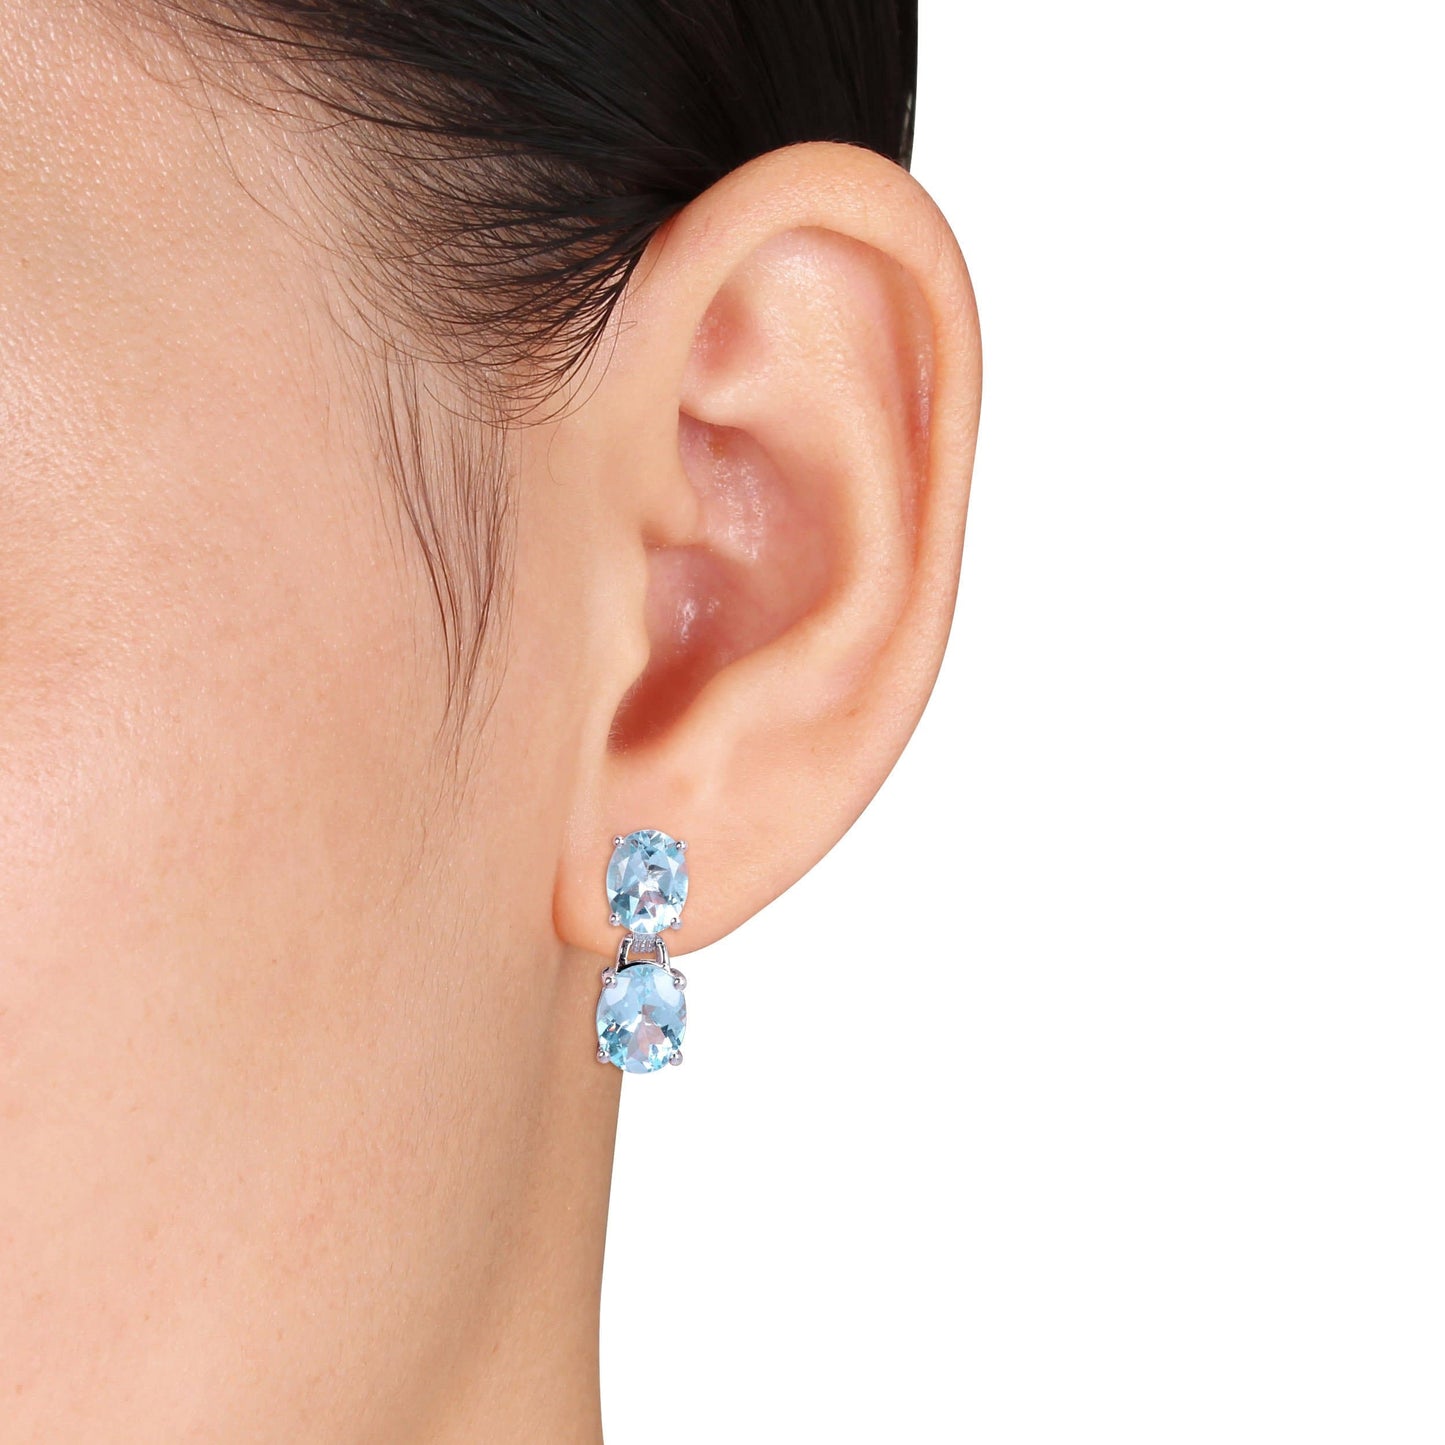 Sophia B 12 5/8ct Oval-Cut Sky-Blue Topaz Dangle Earrings